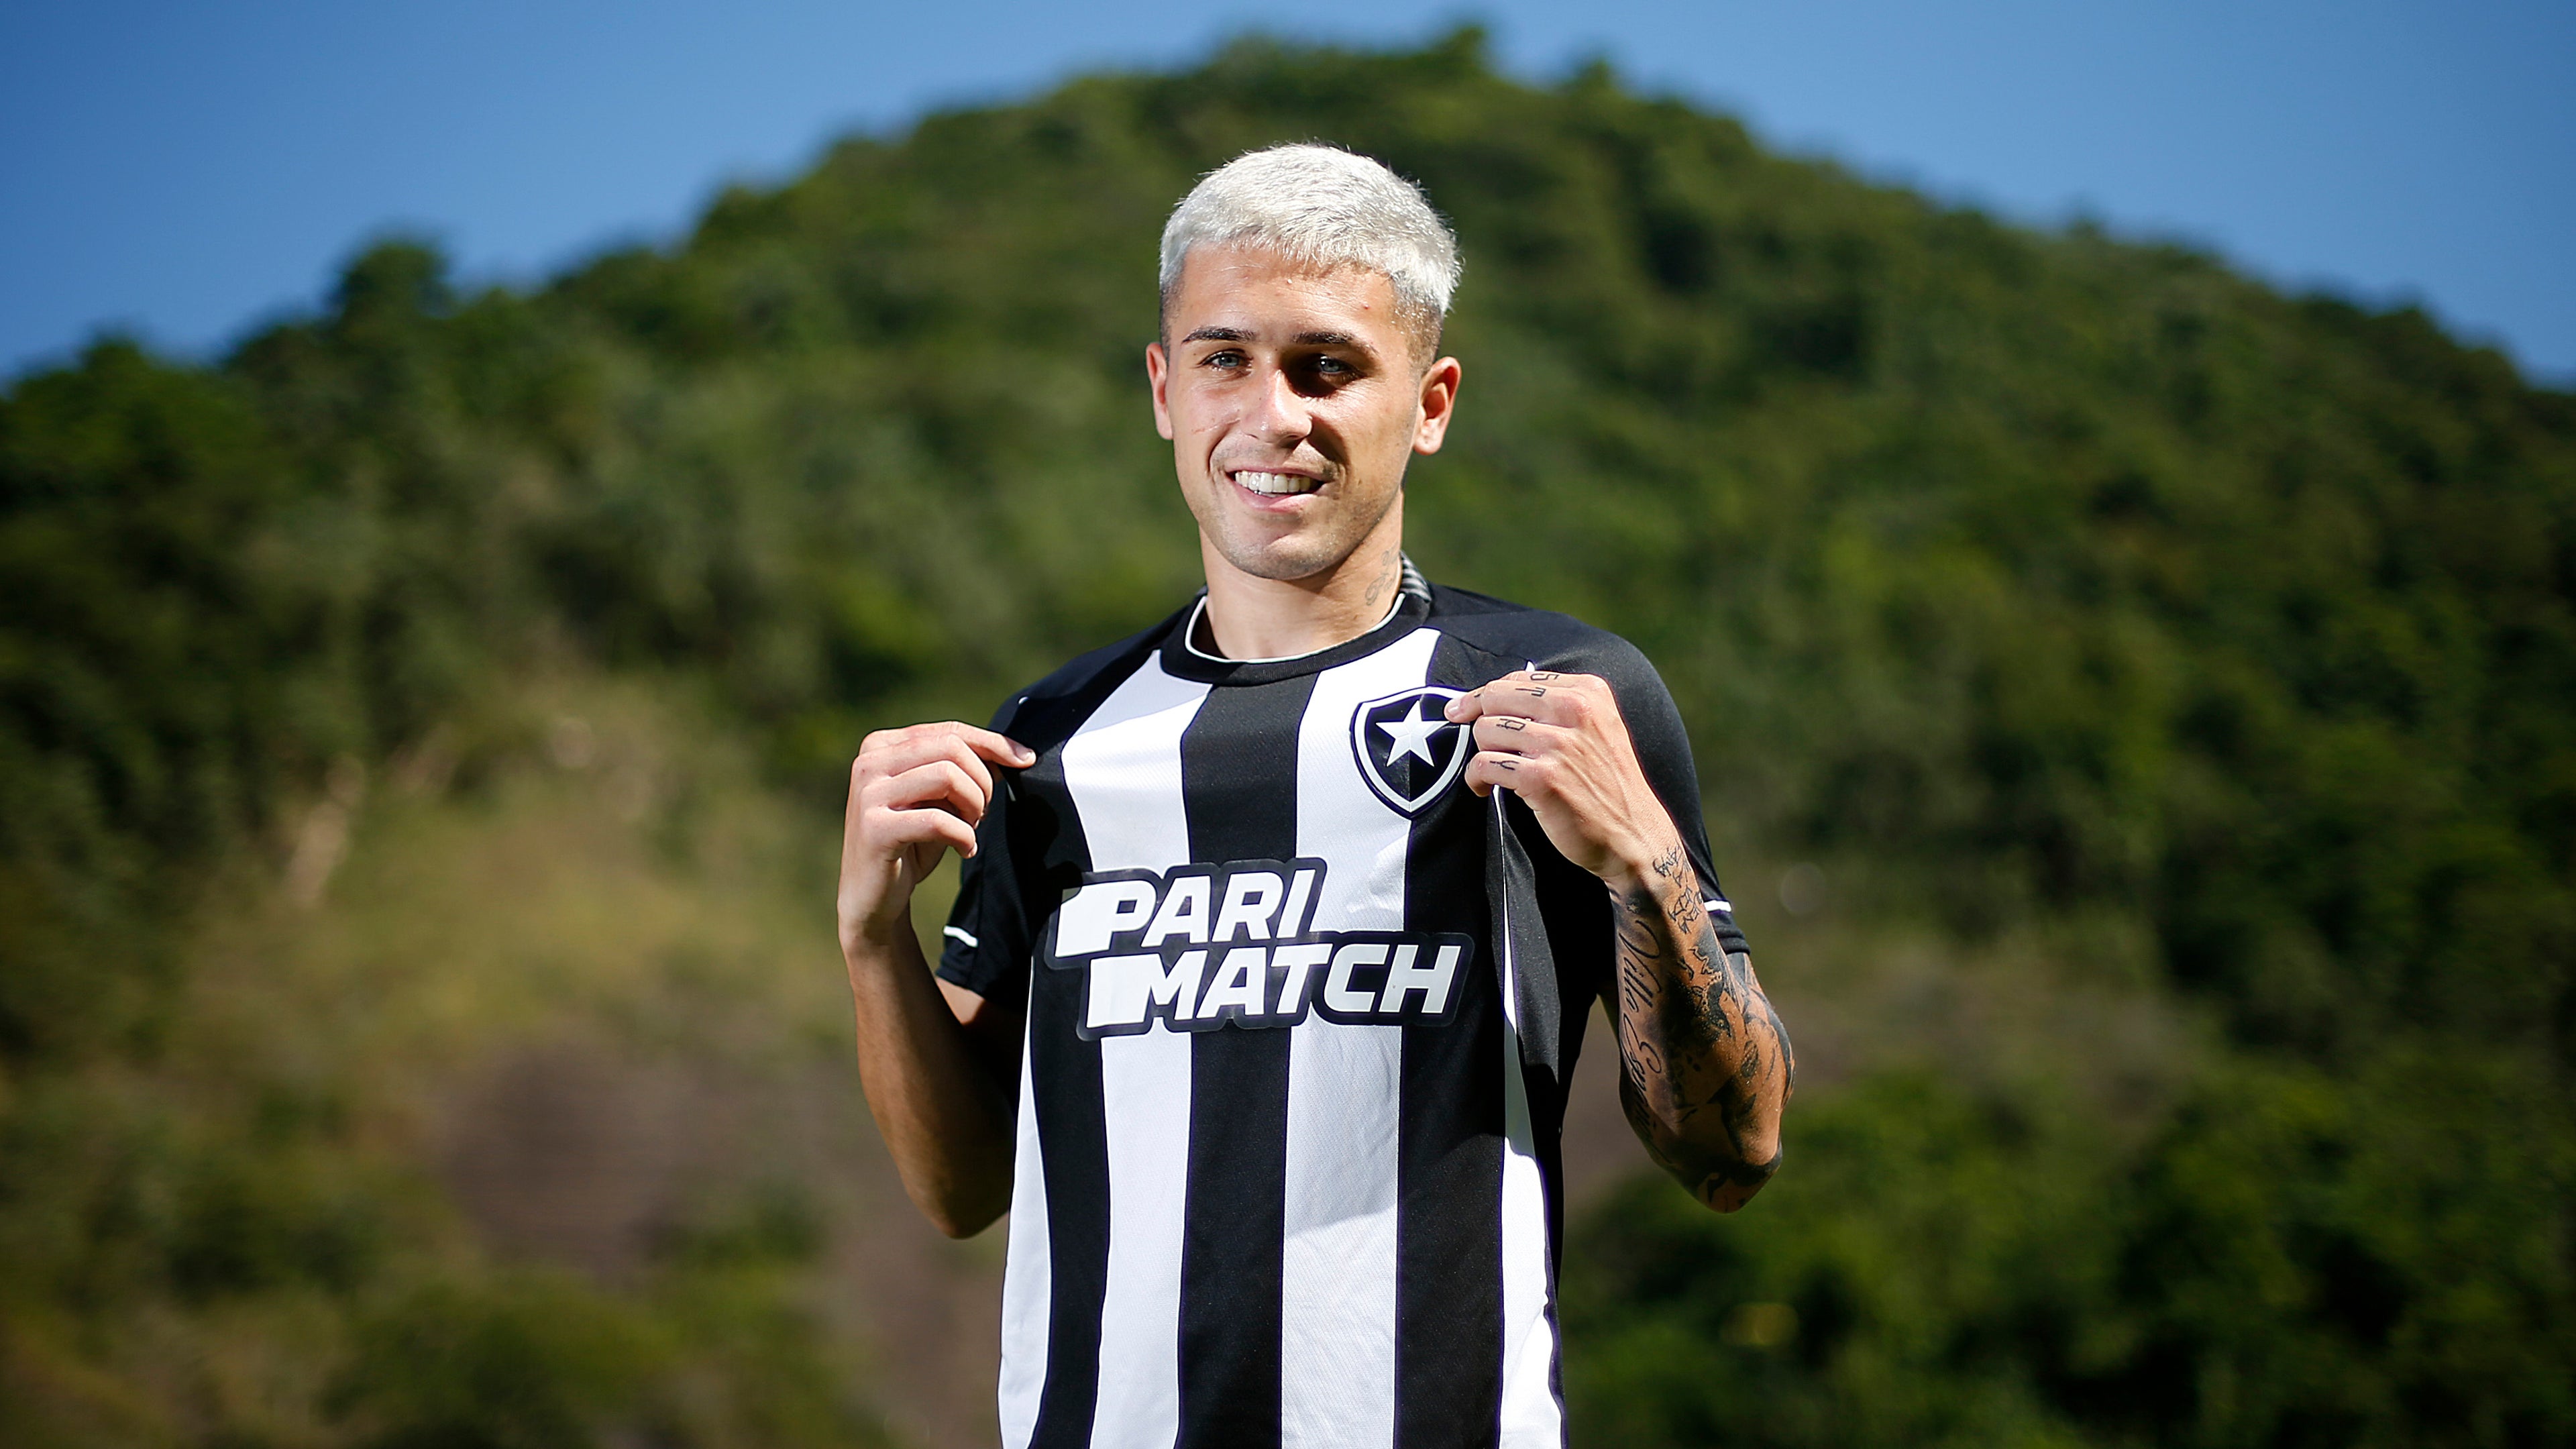 Conheça Diego Hernández, novo jogador do Botafogo